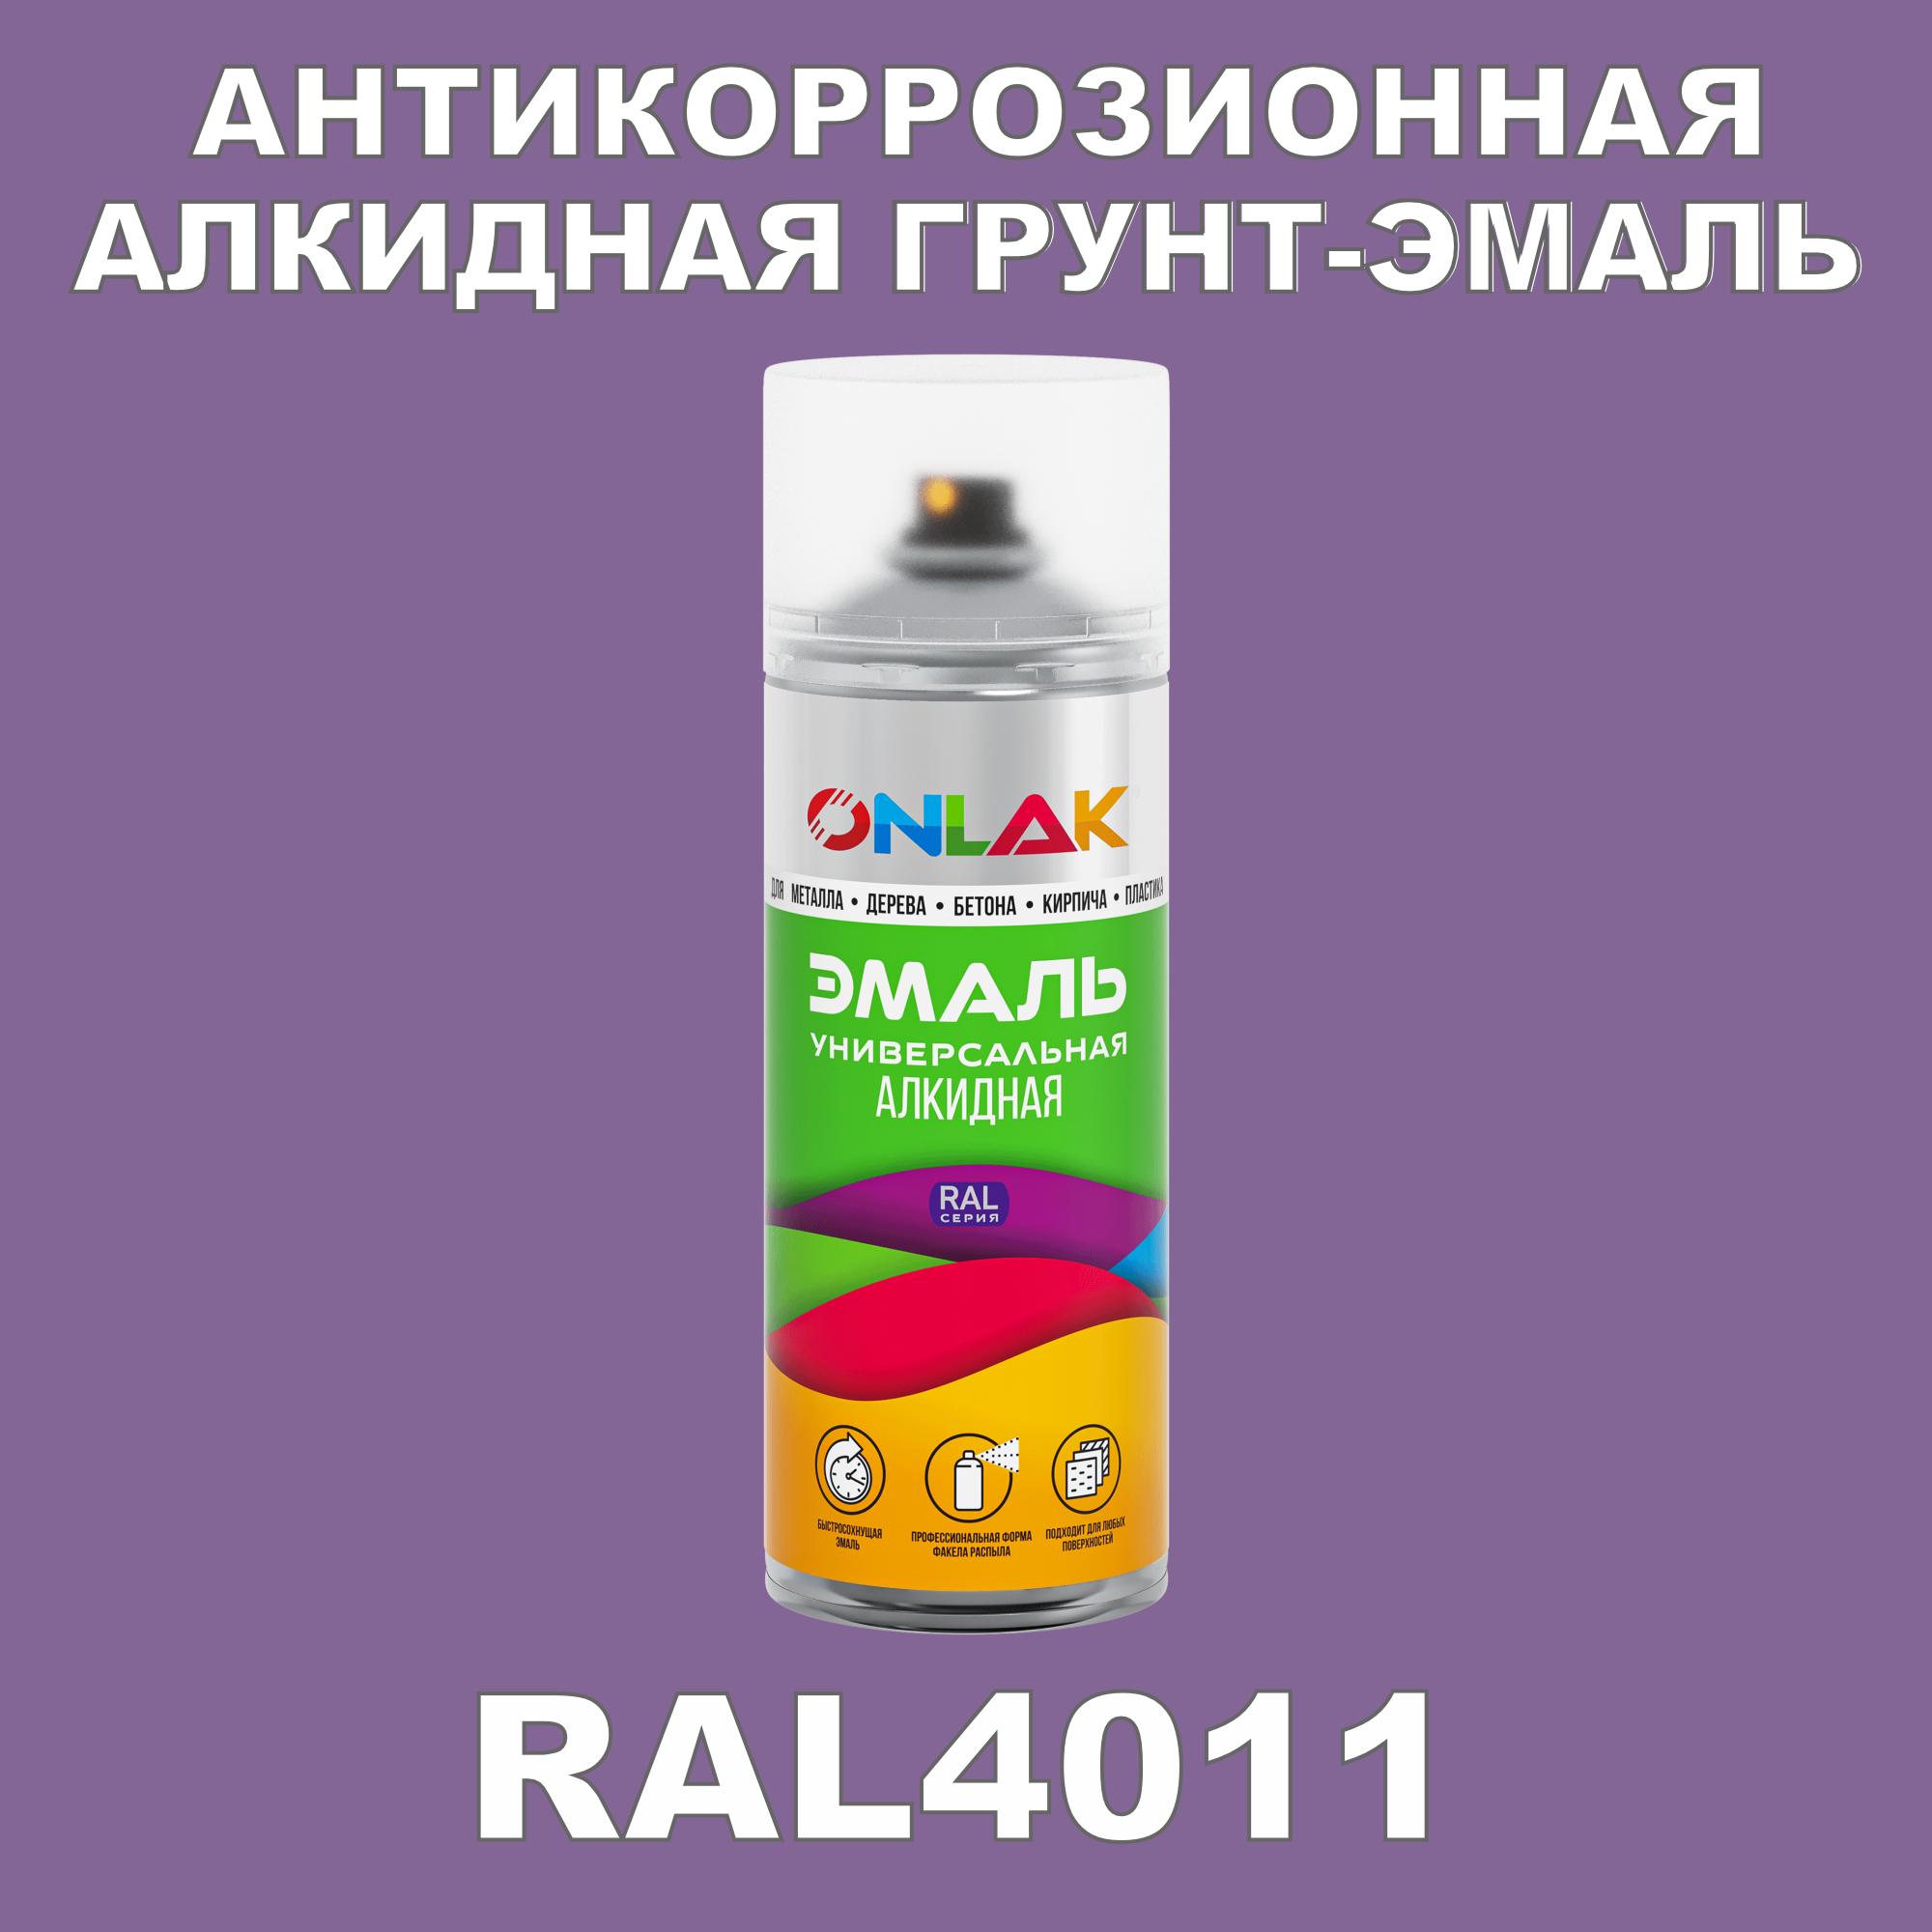 Антикоррозионная грунт-эмаль ONLAK RAL 4011,фиолетовый,550 мл антикоррозионная грунт эмаль onlak ral 4003 фиолетовый 542 мл